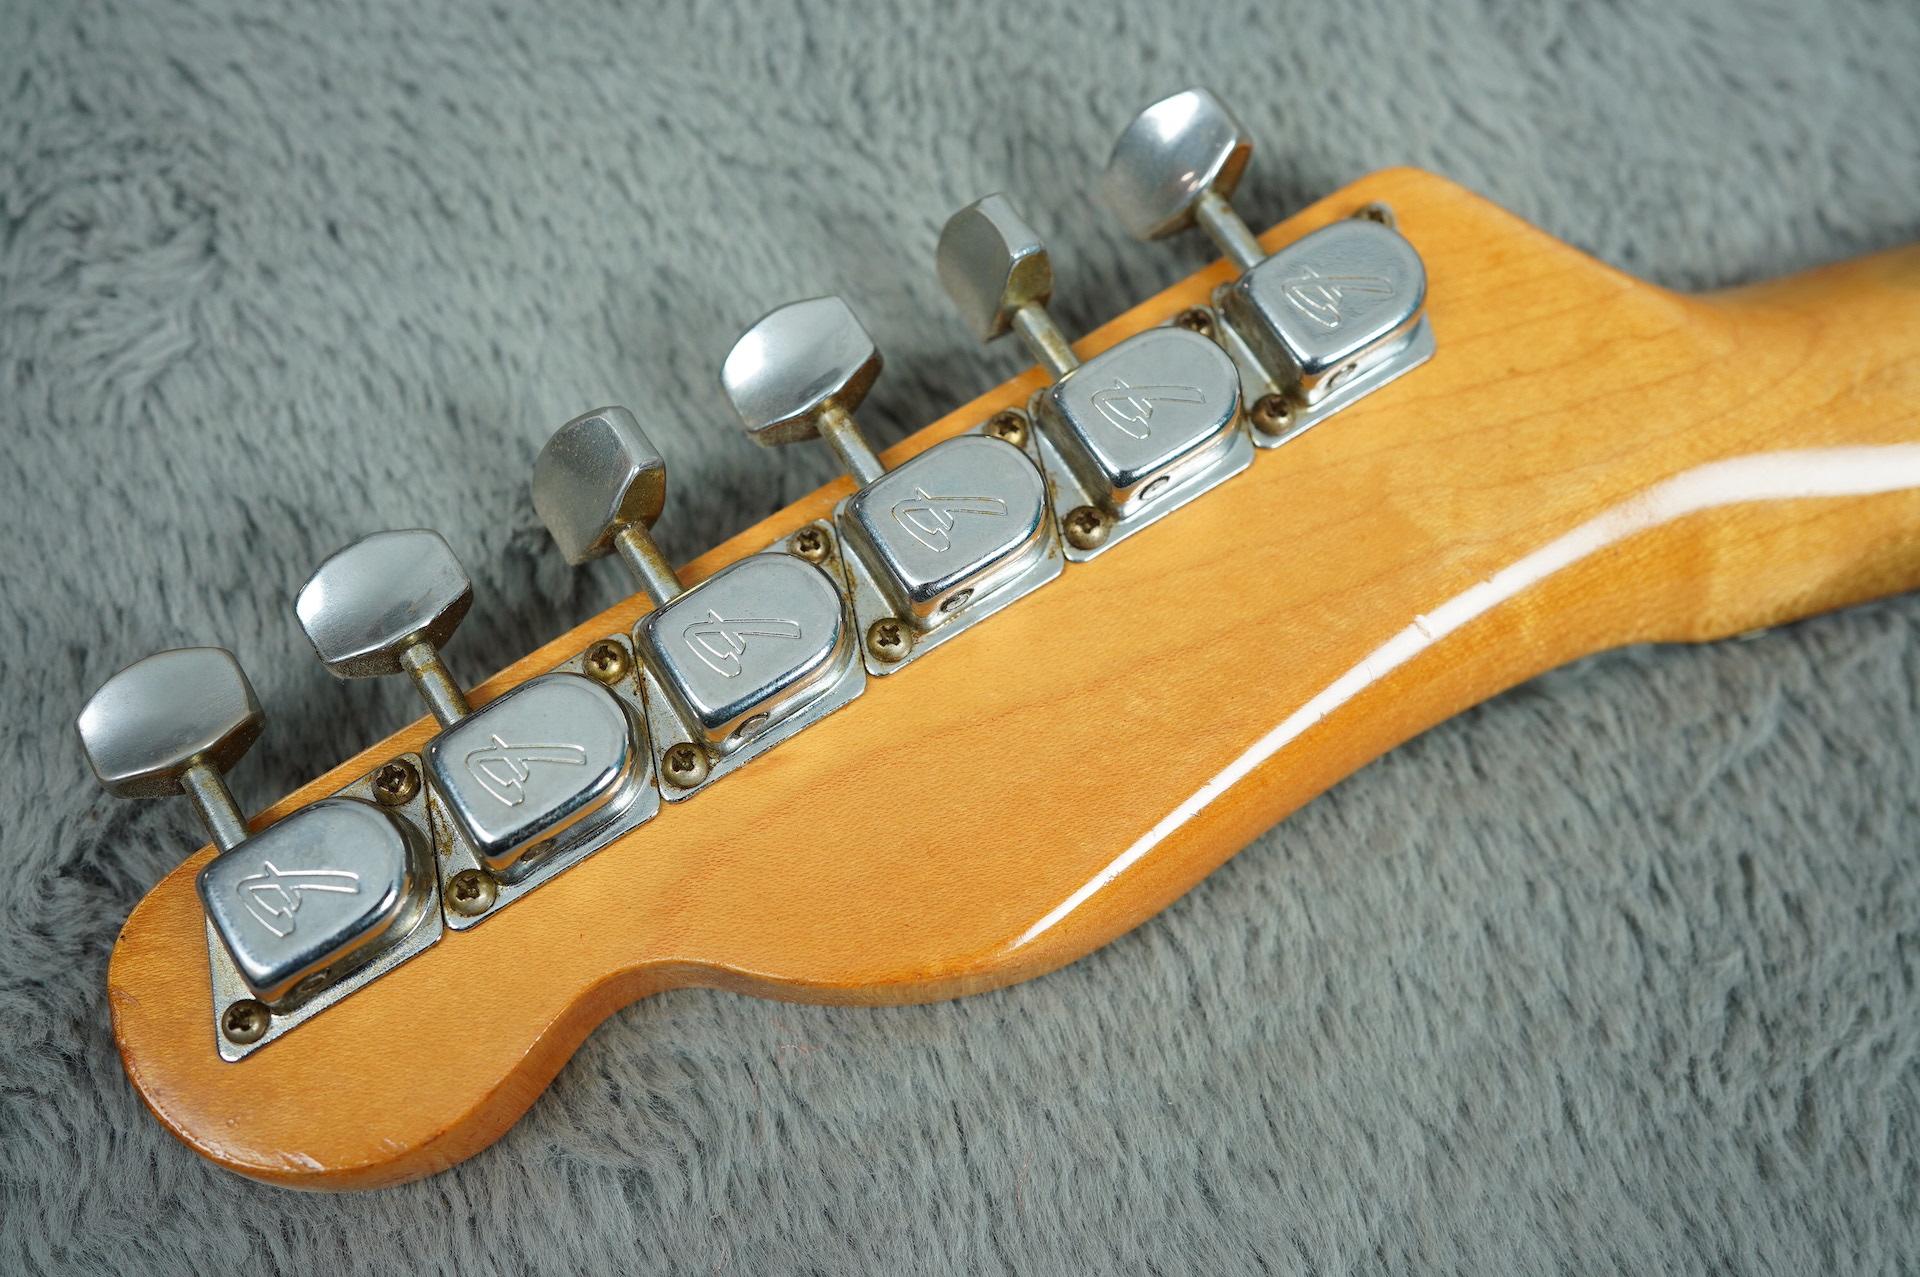 1969 Fender Telecaster Dakota Red